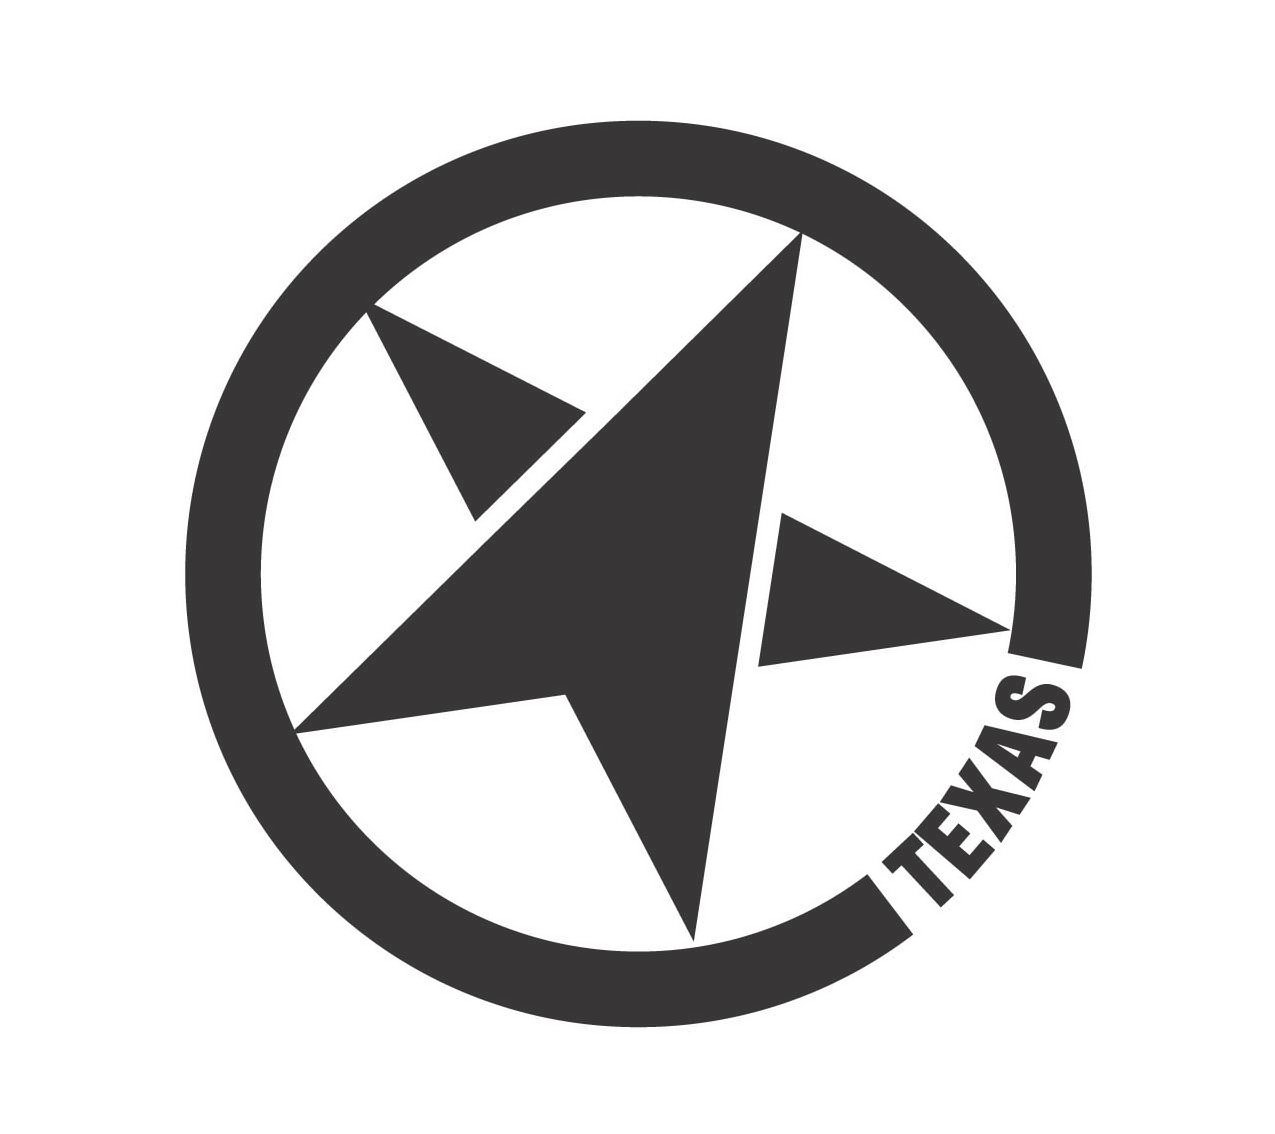 Trademark Logo TEXAS